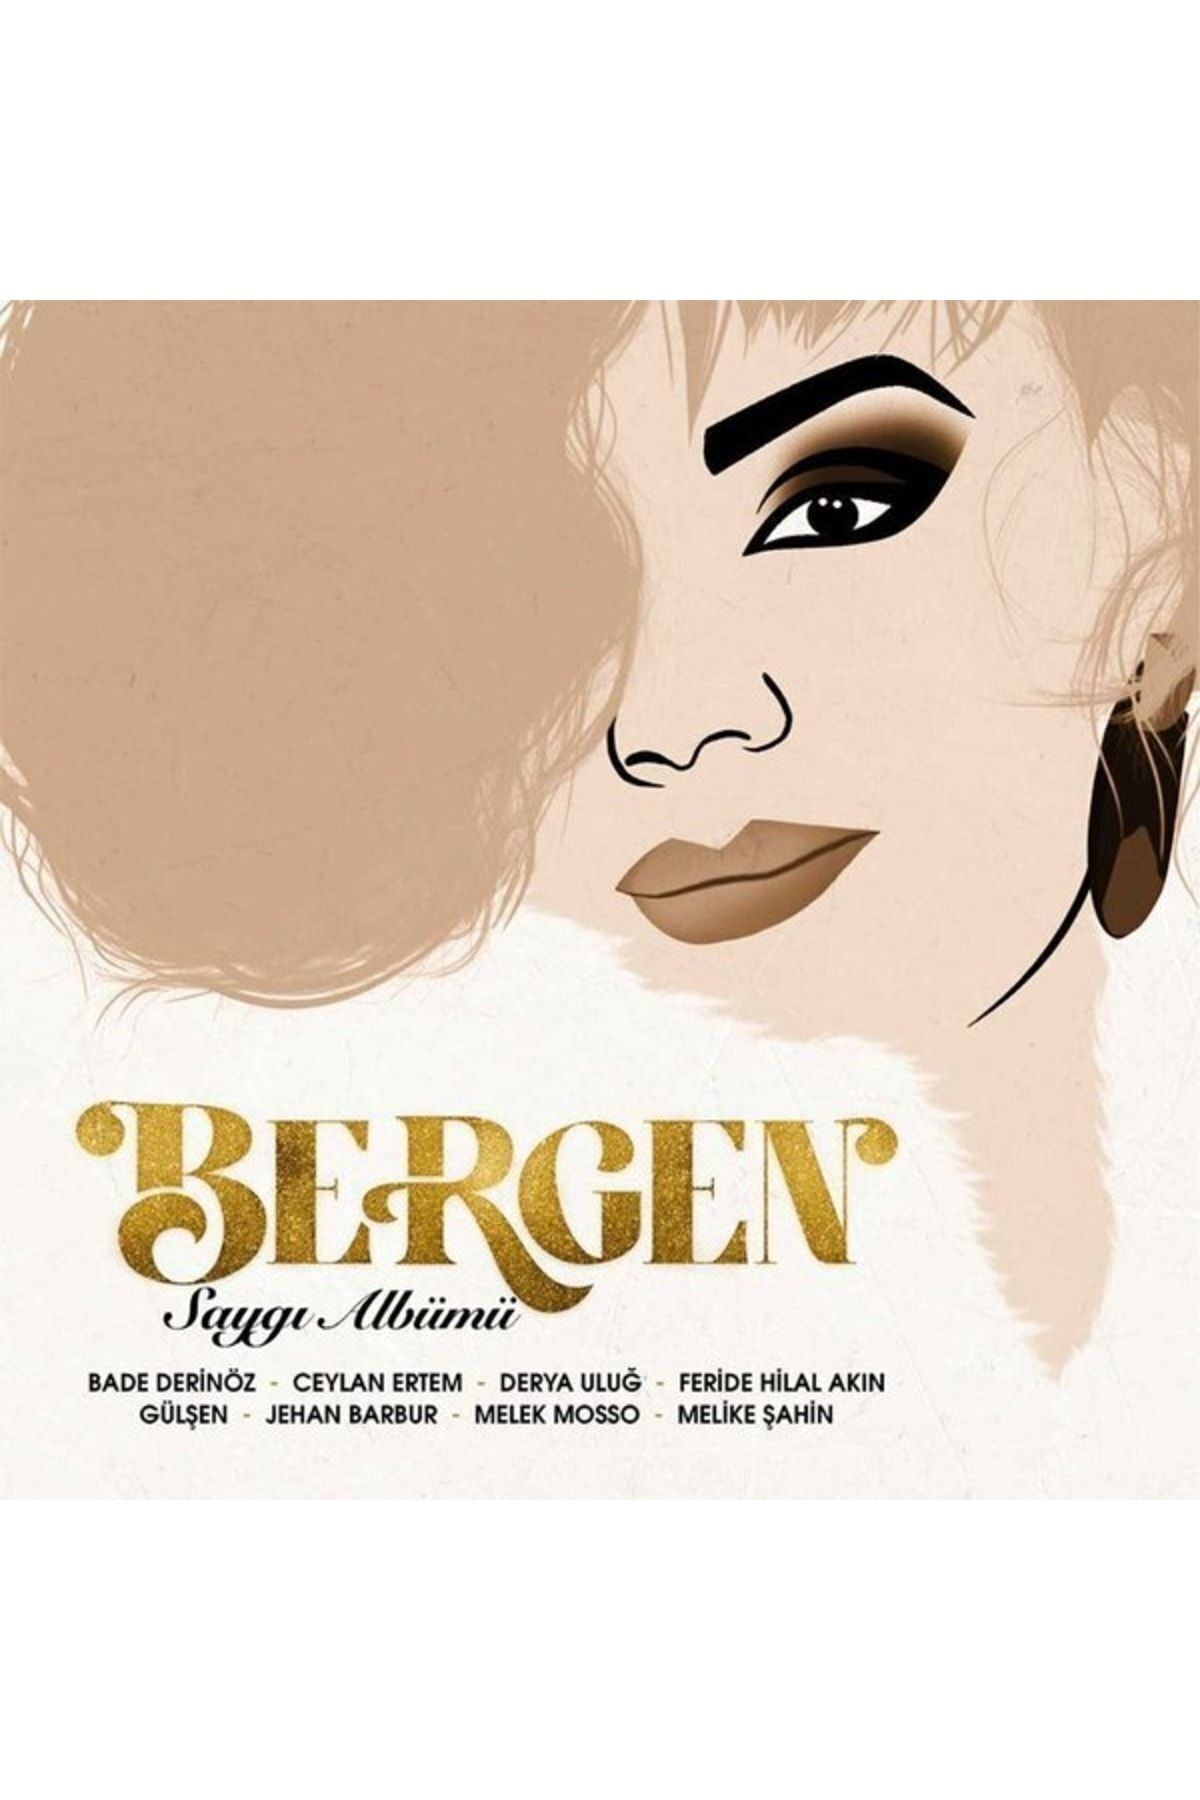 Genel Markalar Plak - Çeşitli Sanatçılar / Bergen Saygı Albümü